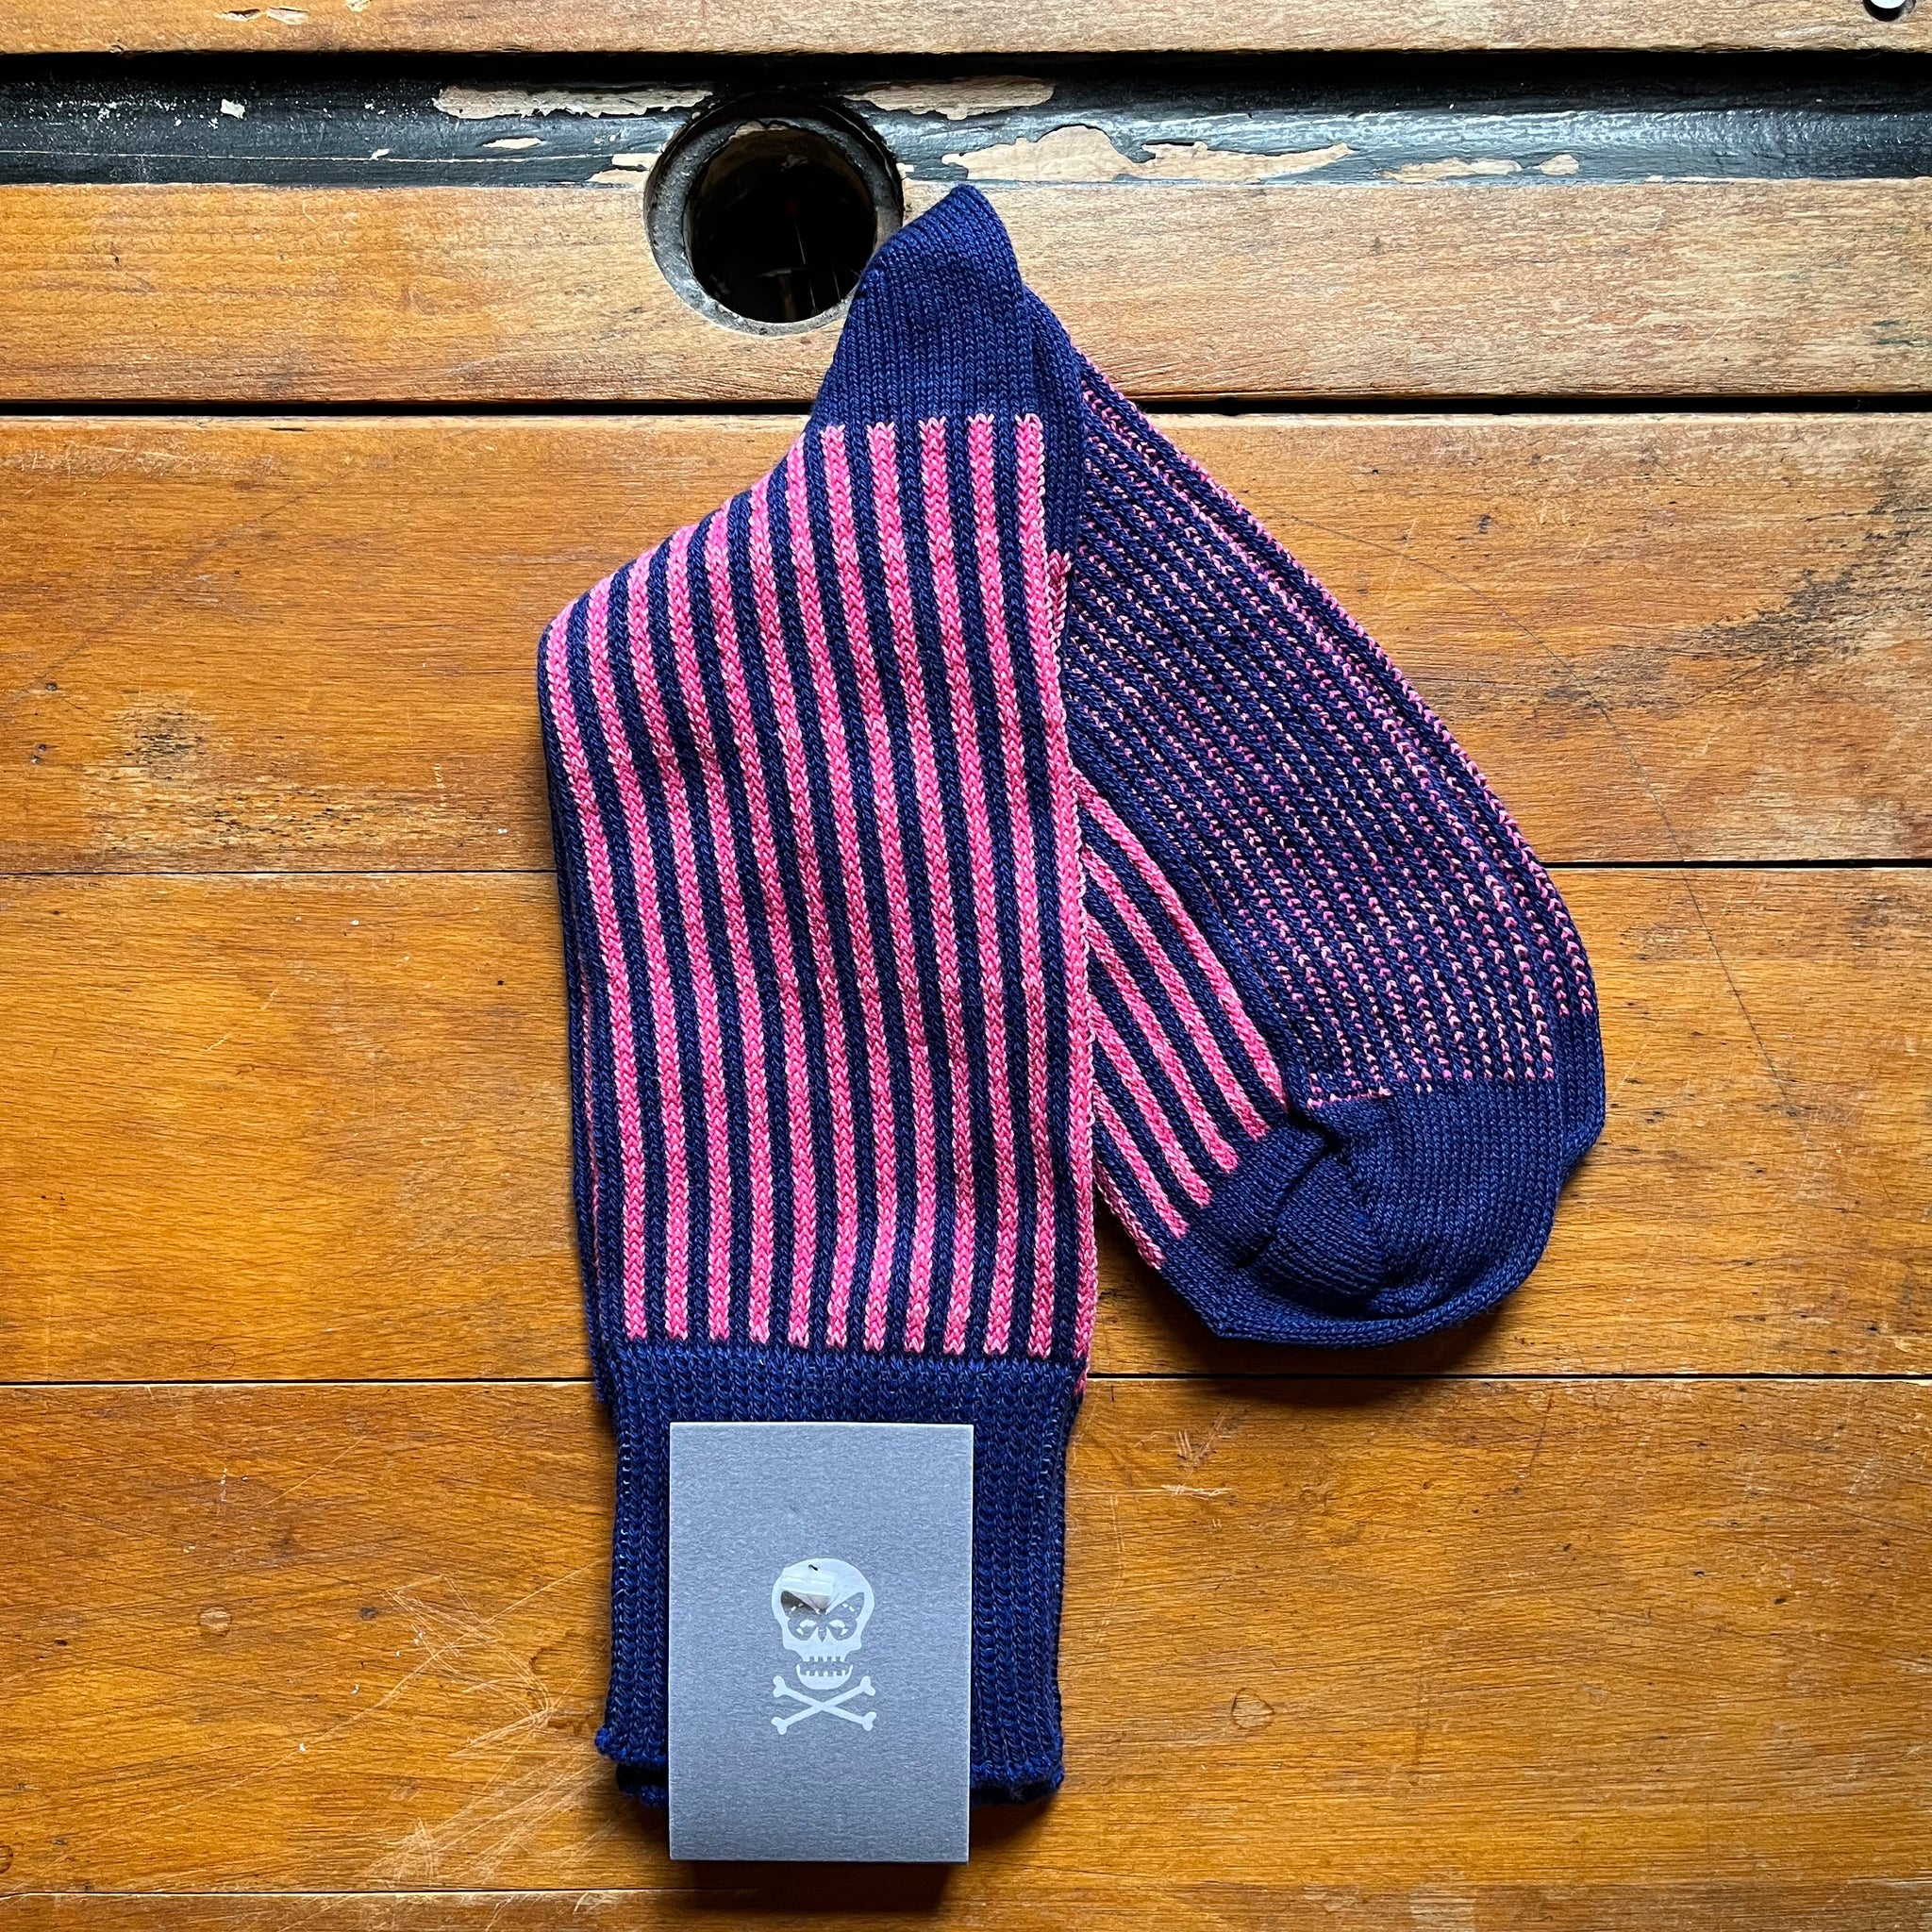 Regent pick and blue vertical striped socks